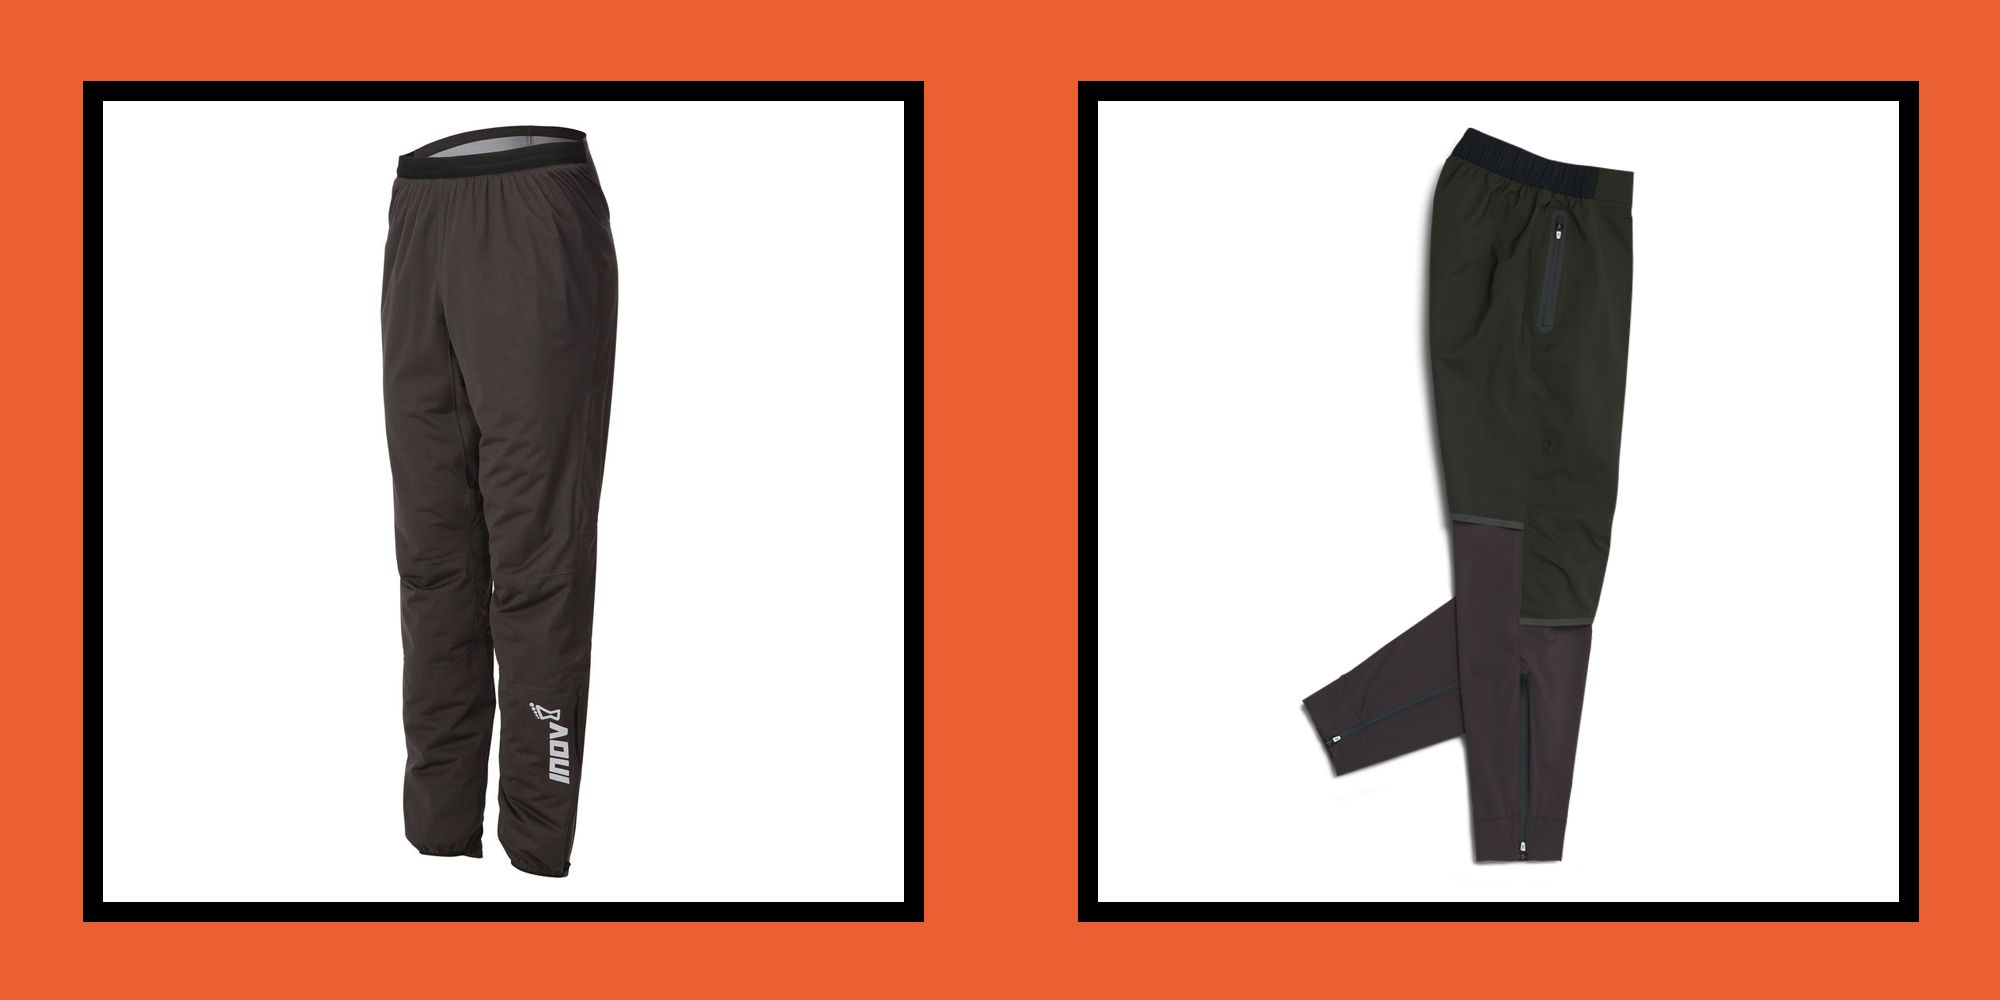 Buy Men's Warm Water Repellent Hiking Trousers SH100 Online | Decathlon